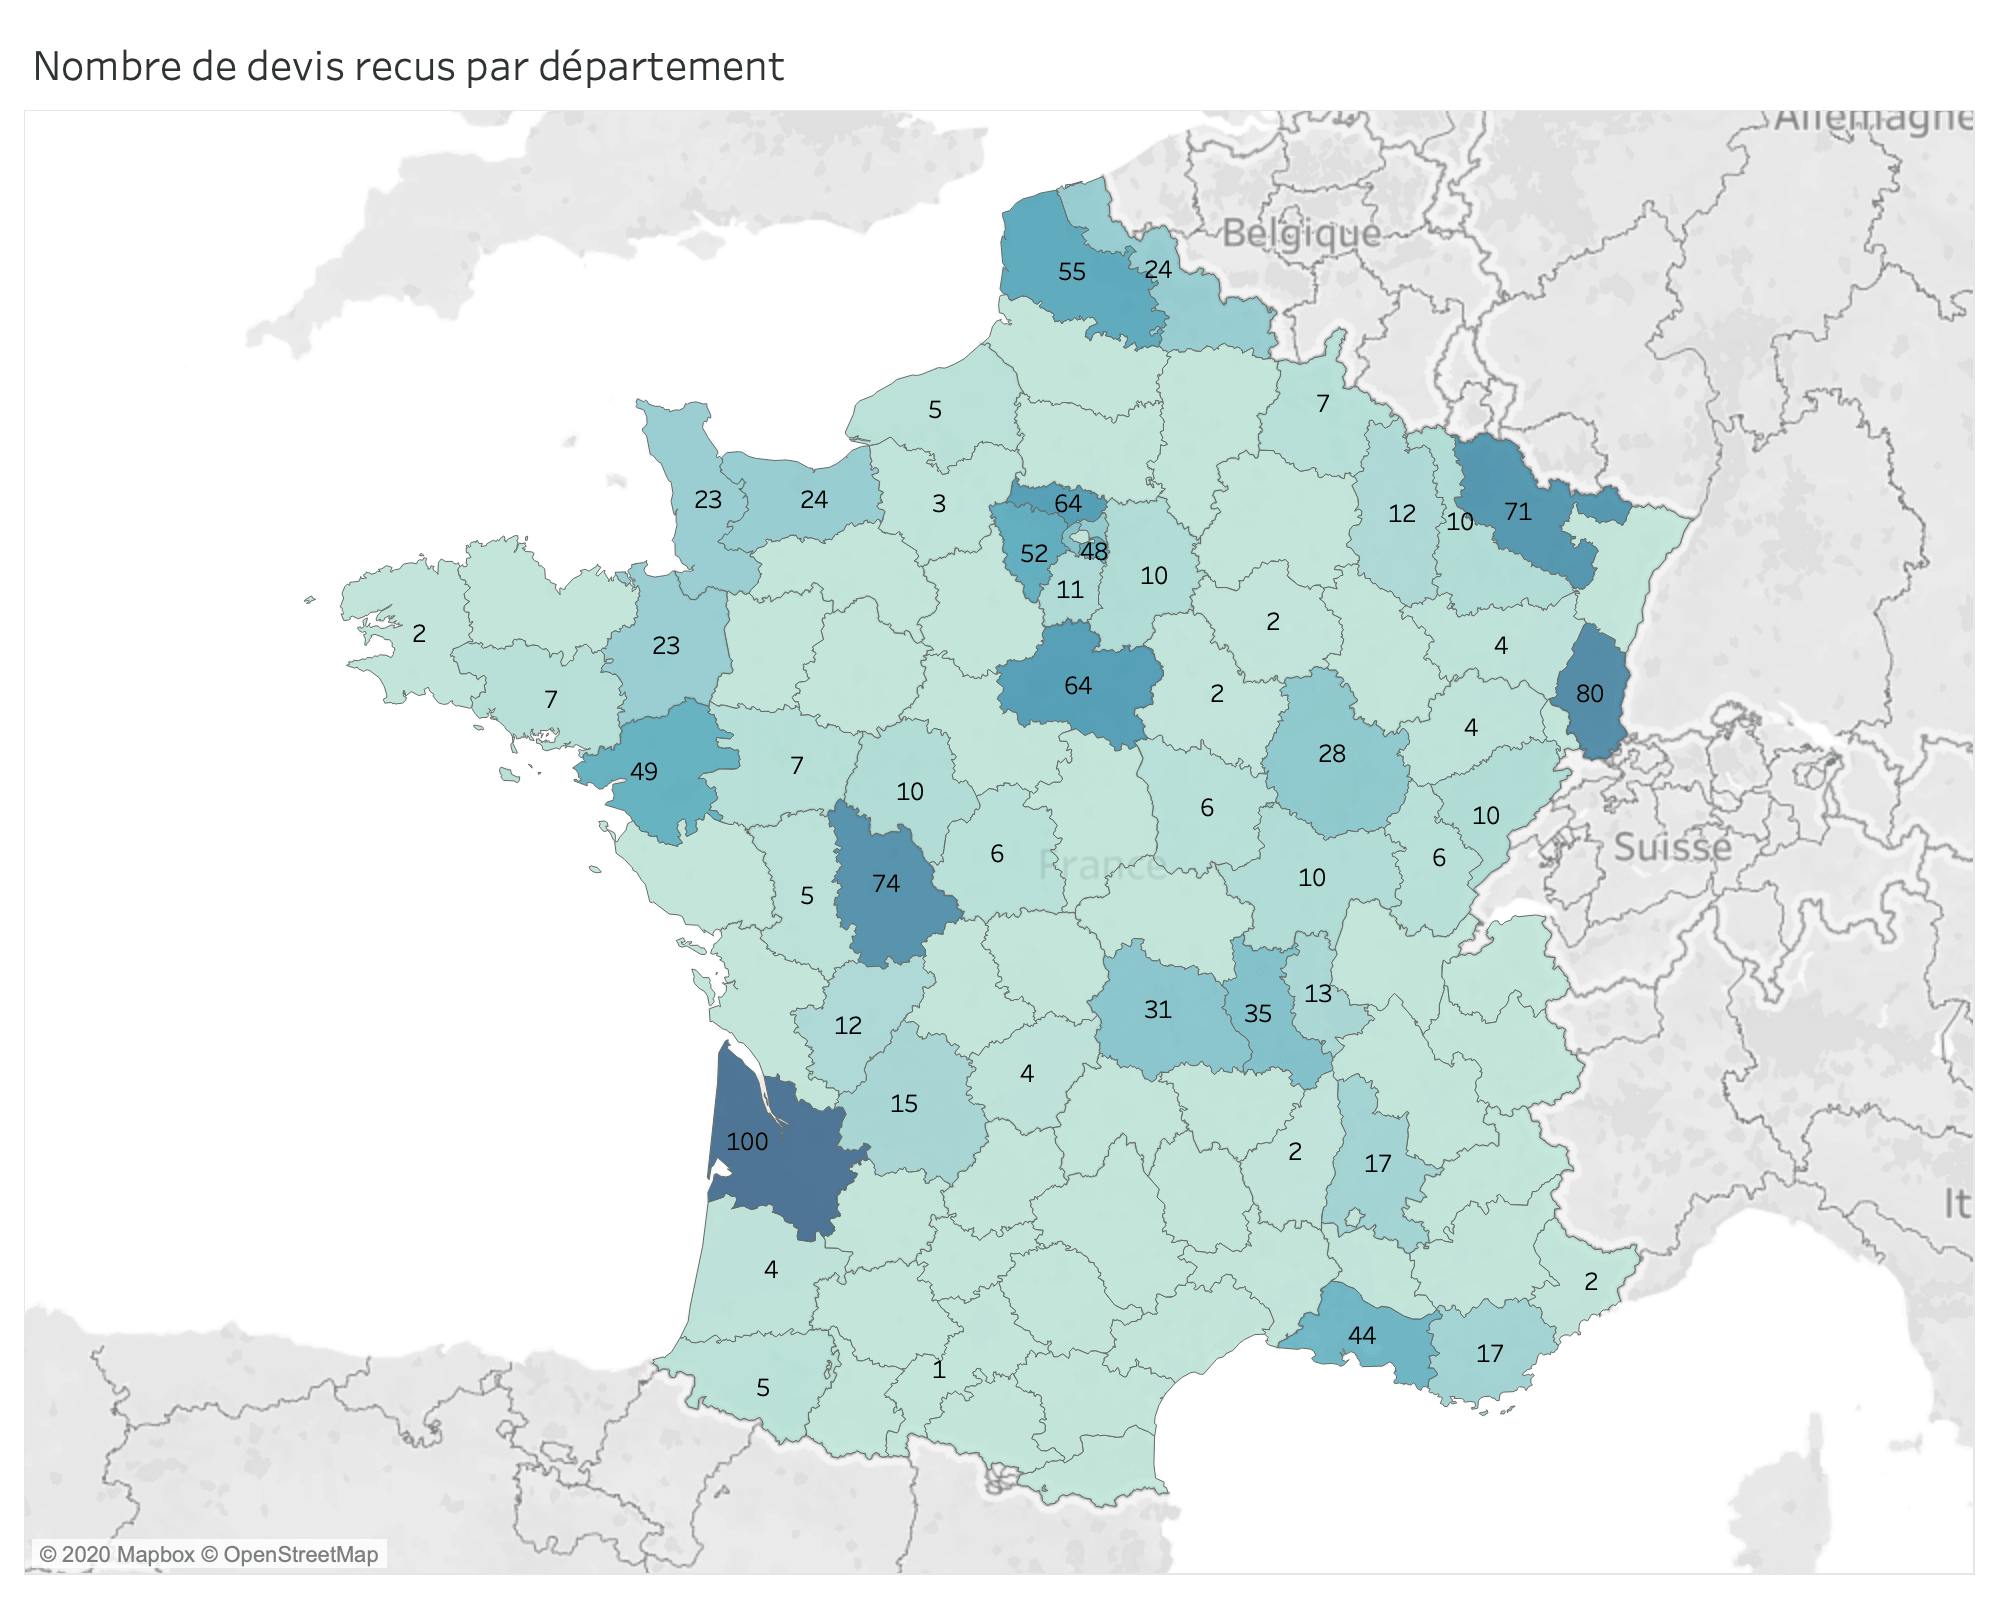 Nombre de devis transmis par département en France - sondage juin 2020